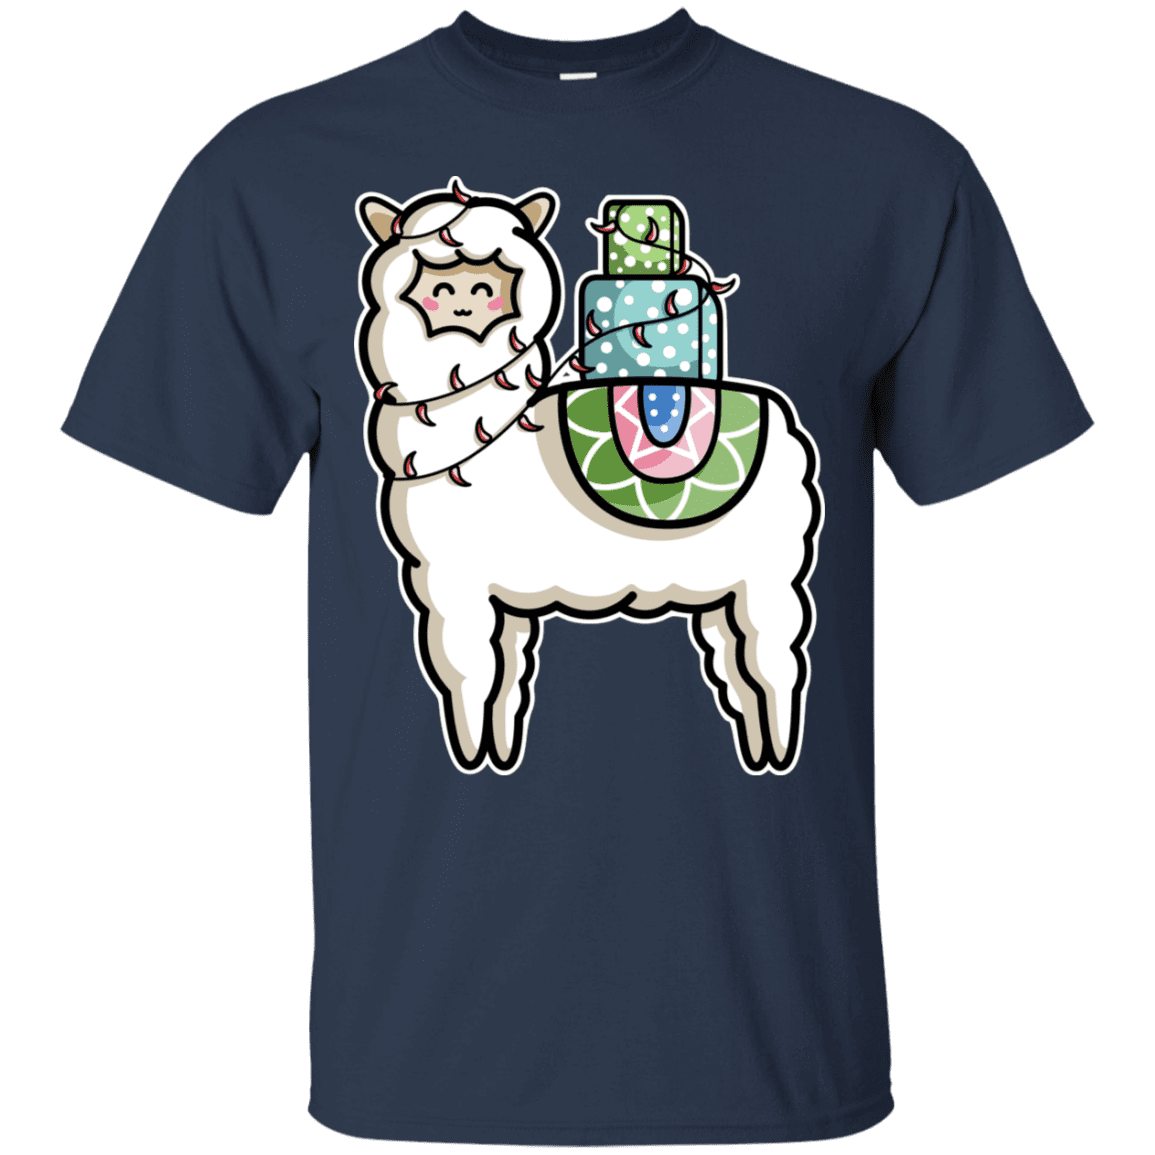 T-Shirts Navy / S Kawaii Cute Llama Carrying Presents T-Shirt